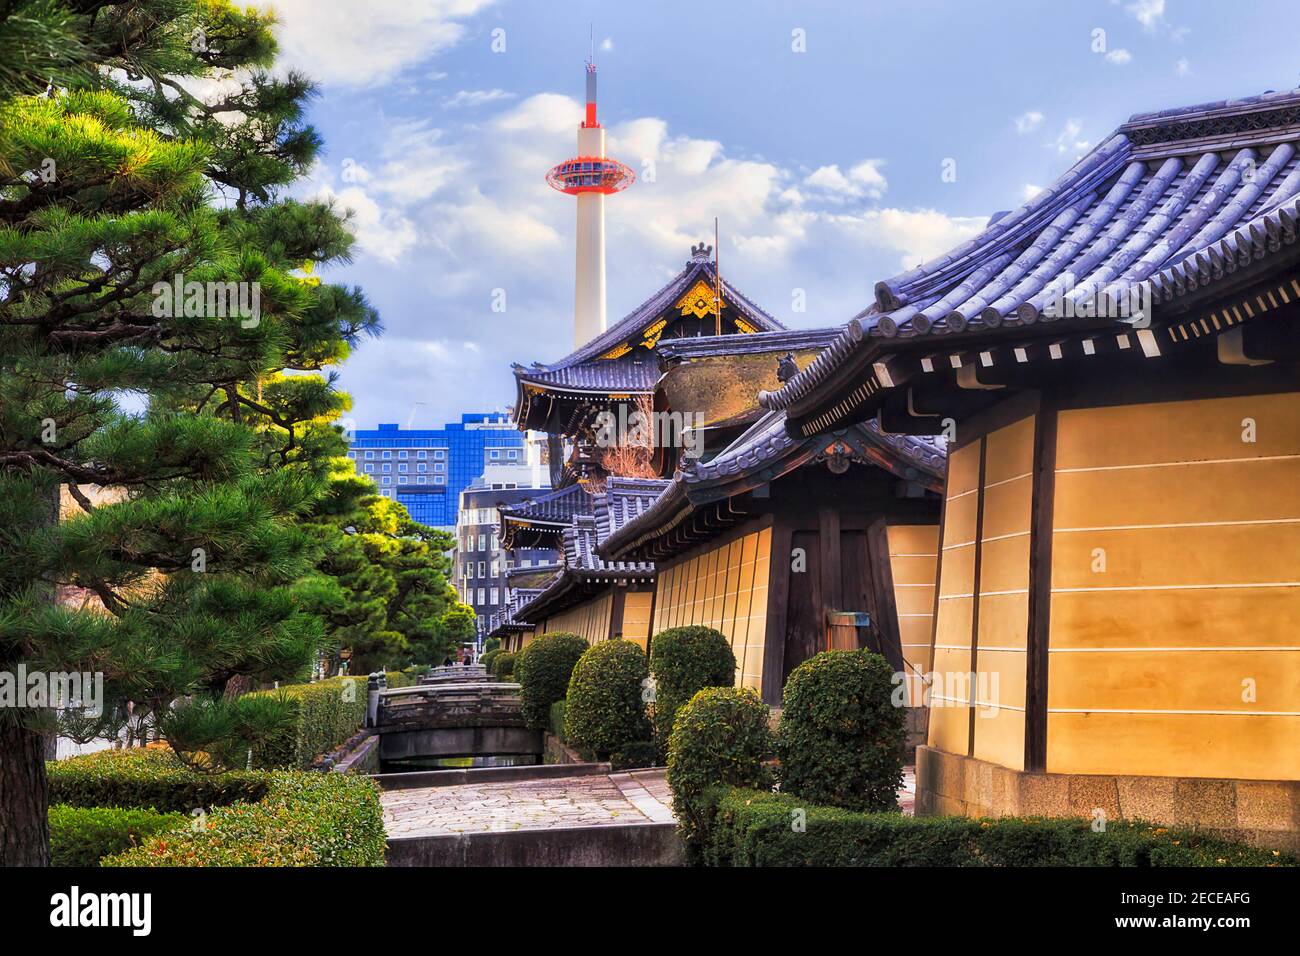 Vecchie e nuove torri nel centro cittadino di Kyoto, Giappone - architettura tradizionale e moderna. Foto Stock